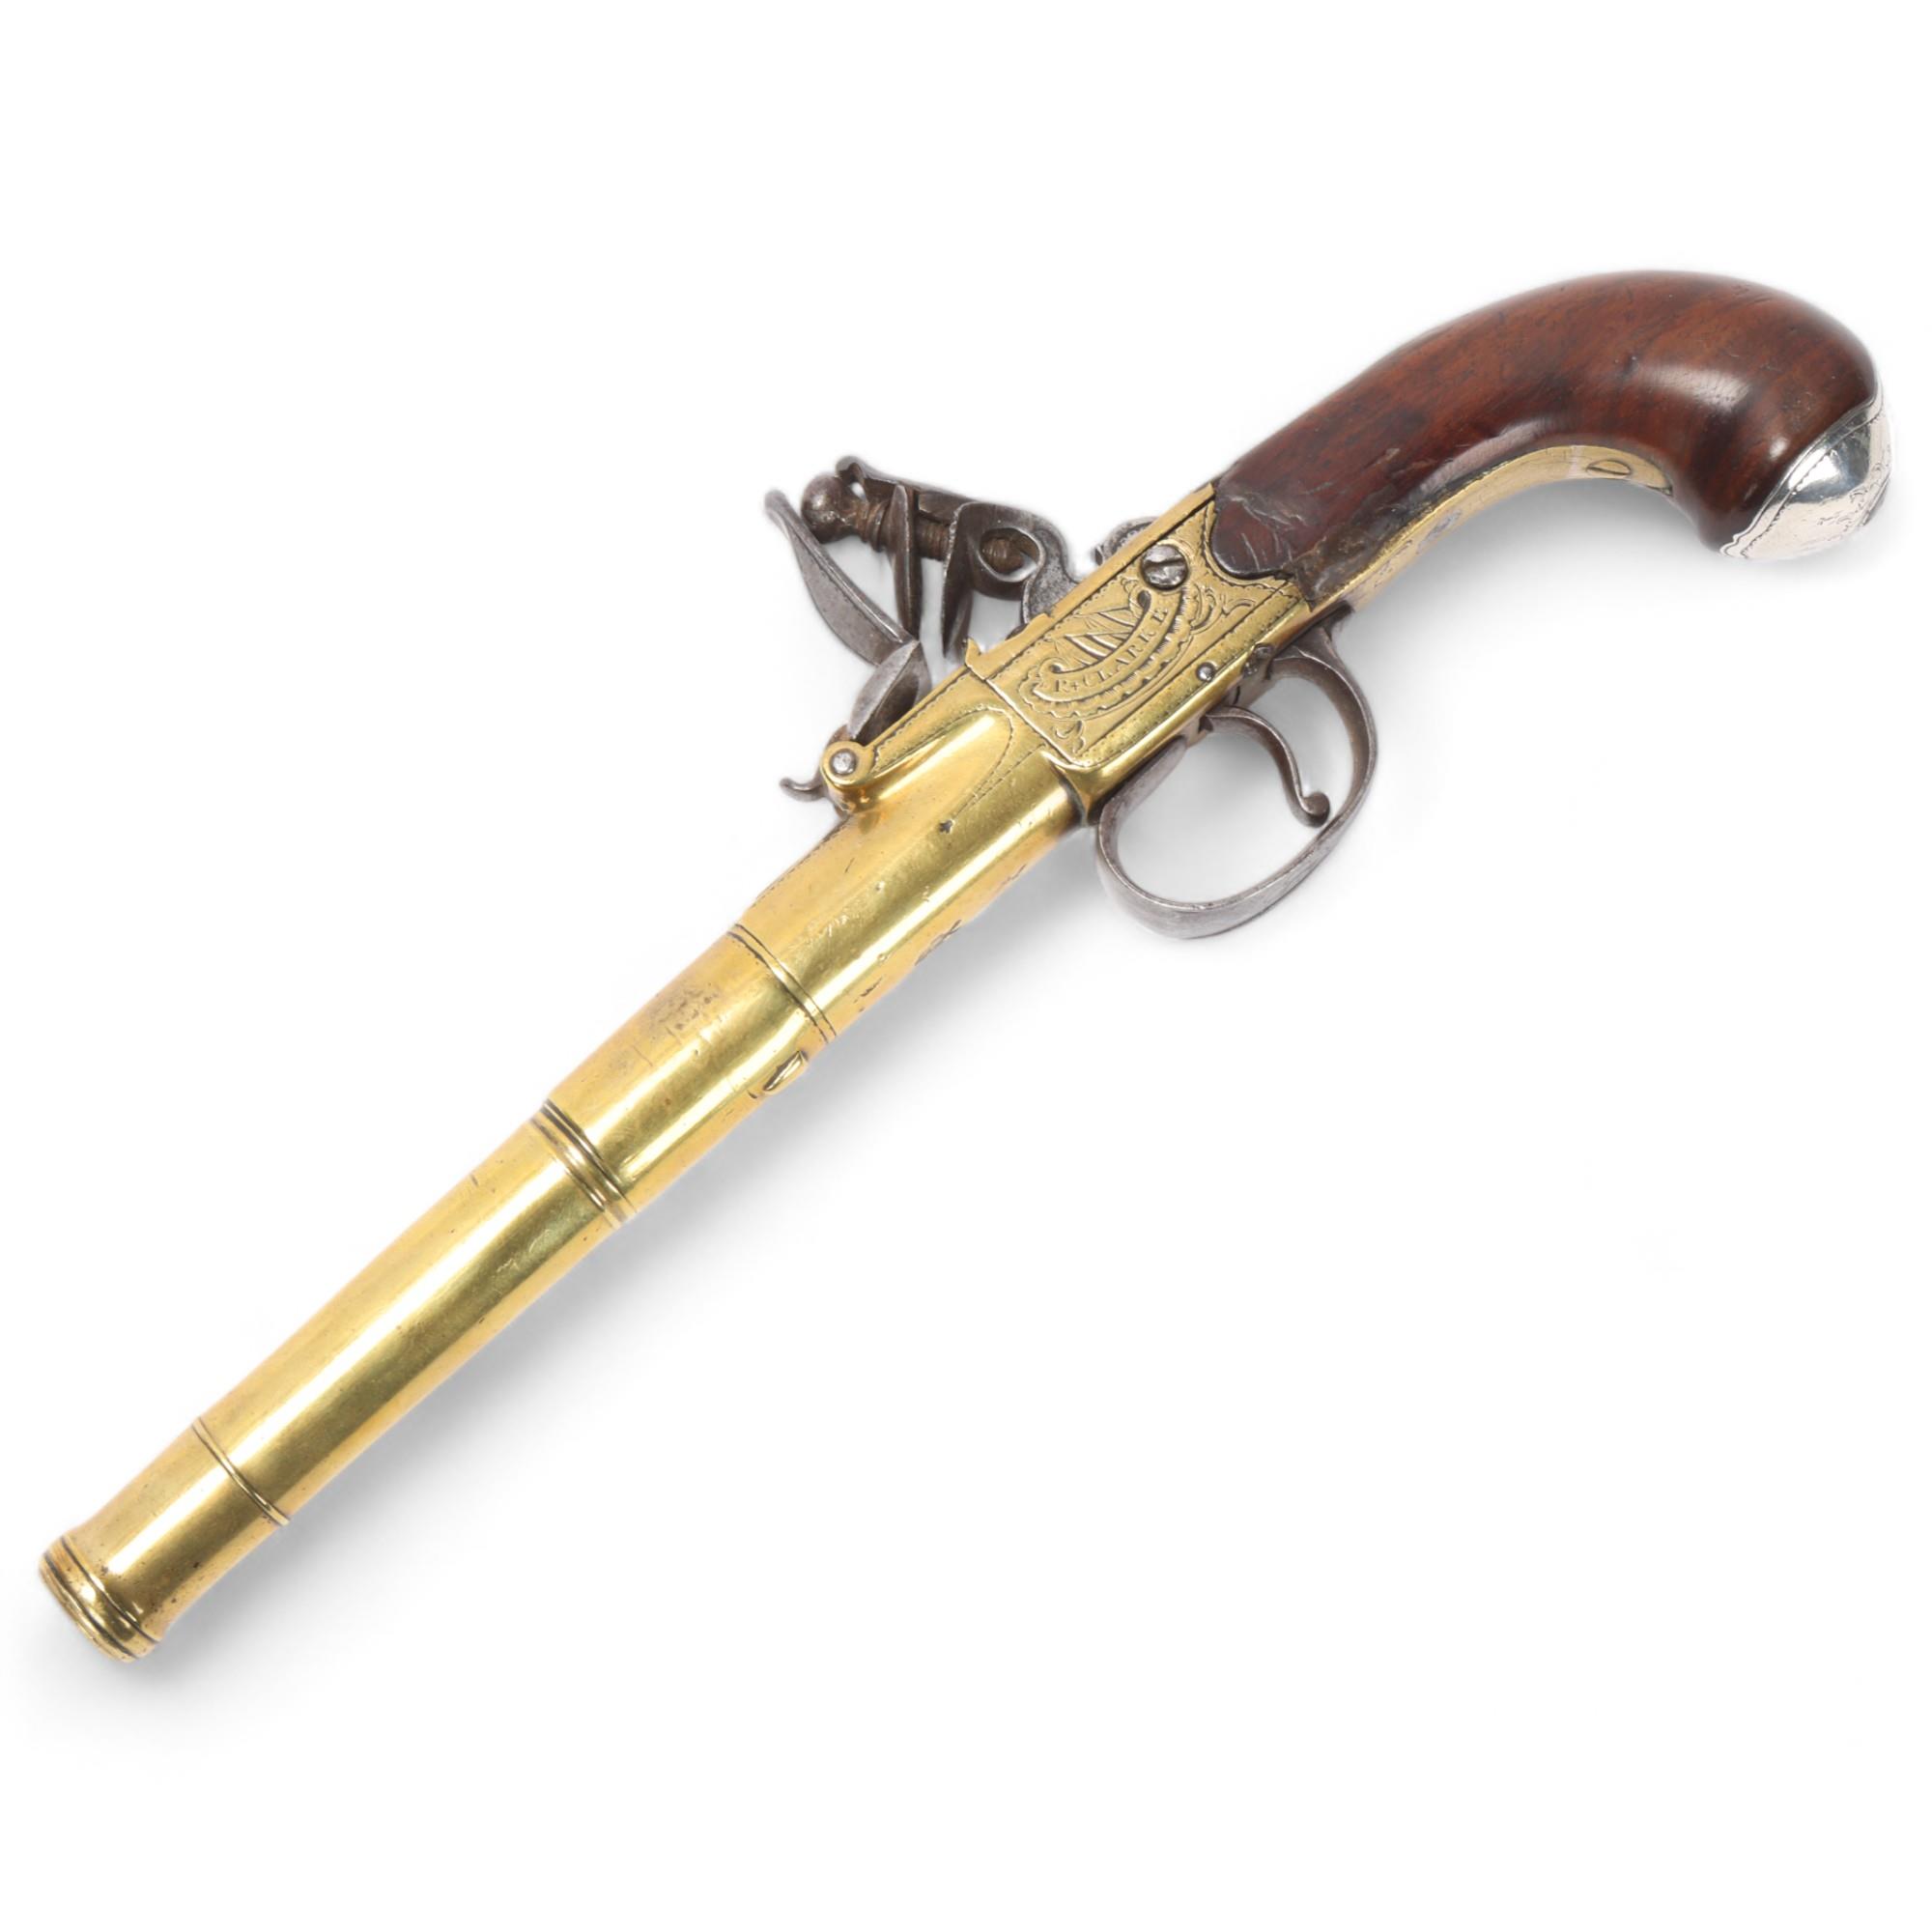 An 18th century brass cannon barrel flintlock pistol, by Clarke of Cheapside London, serial no. 102,